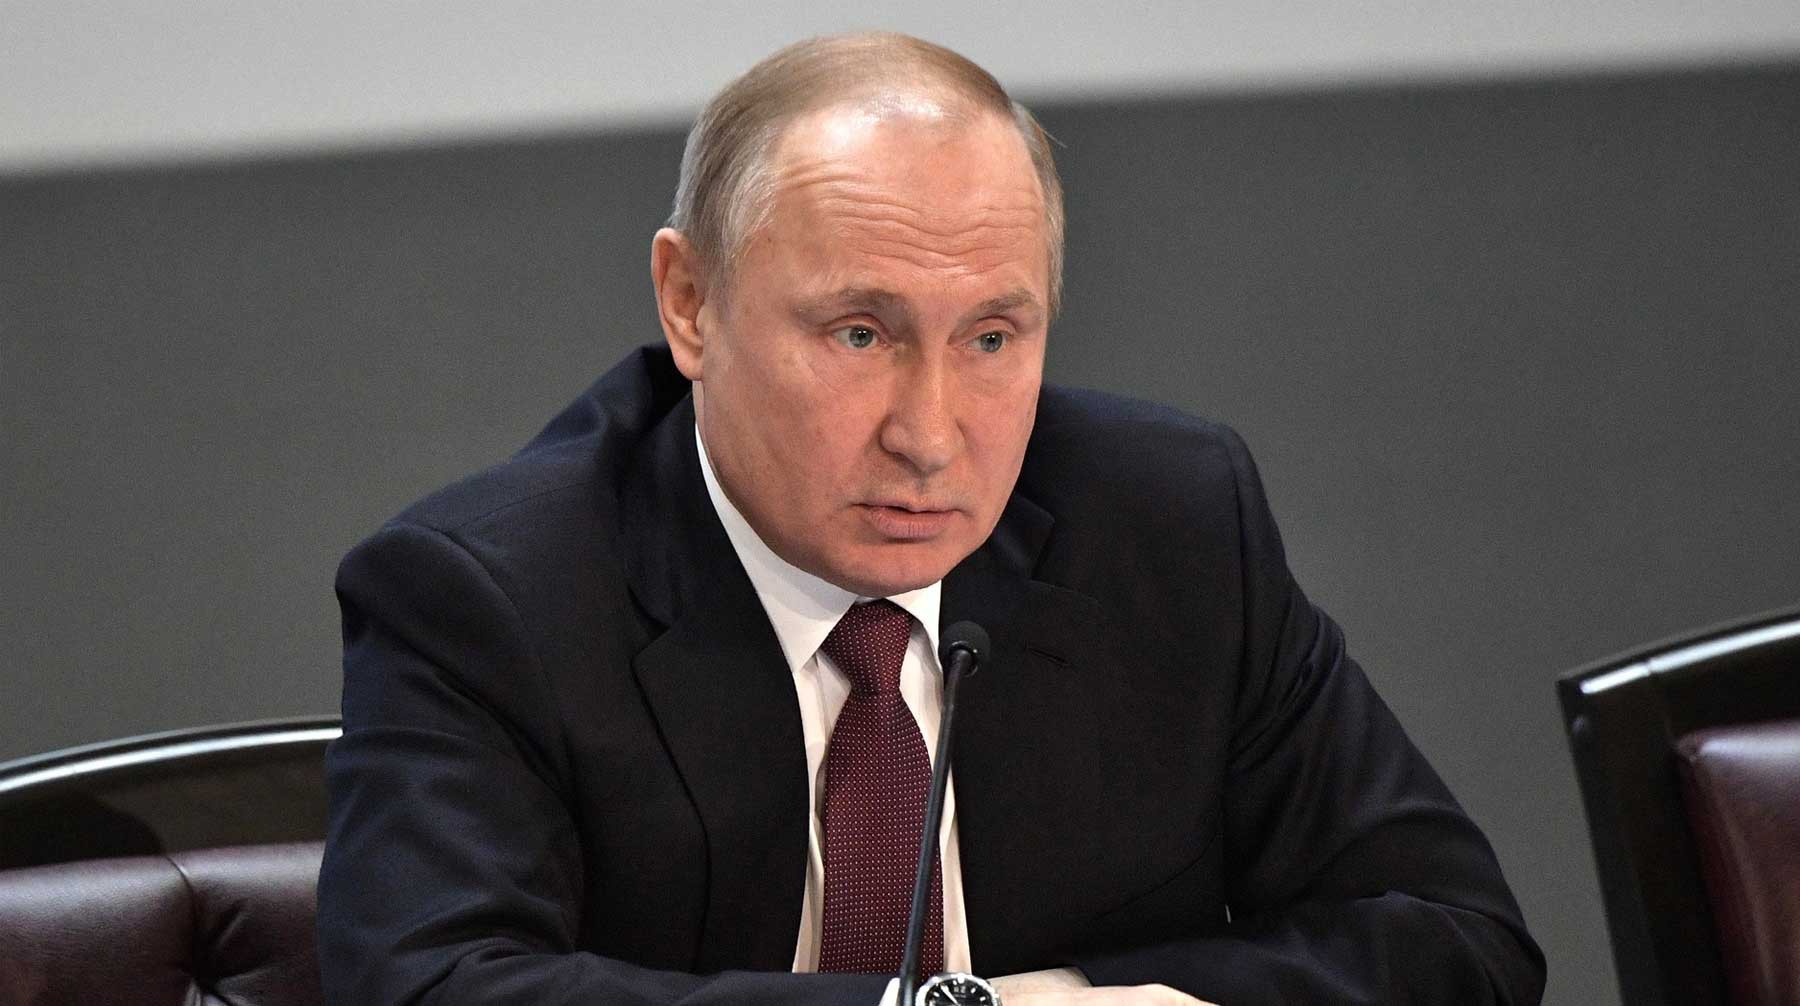 Dailystorm - Путин назвал идеалы западной цивилизации «сомнительными»